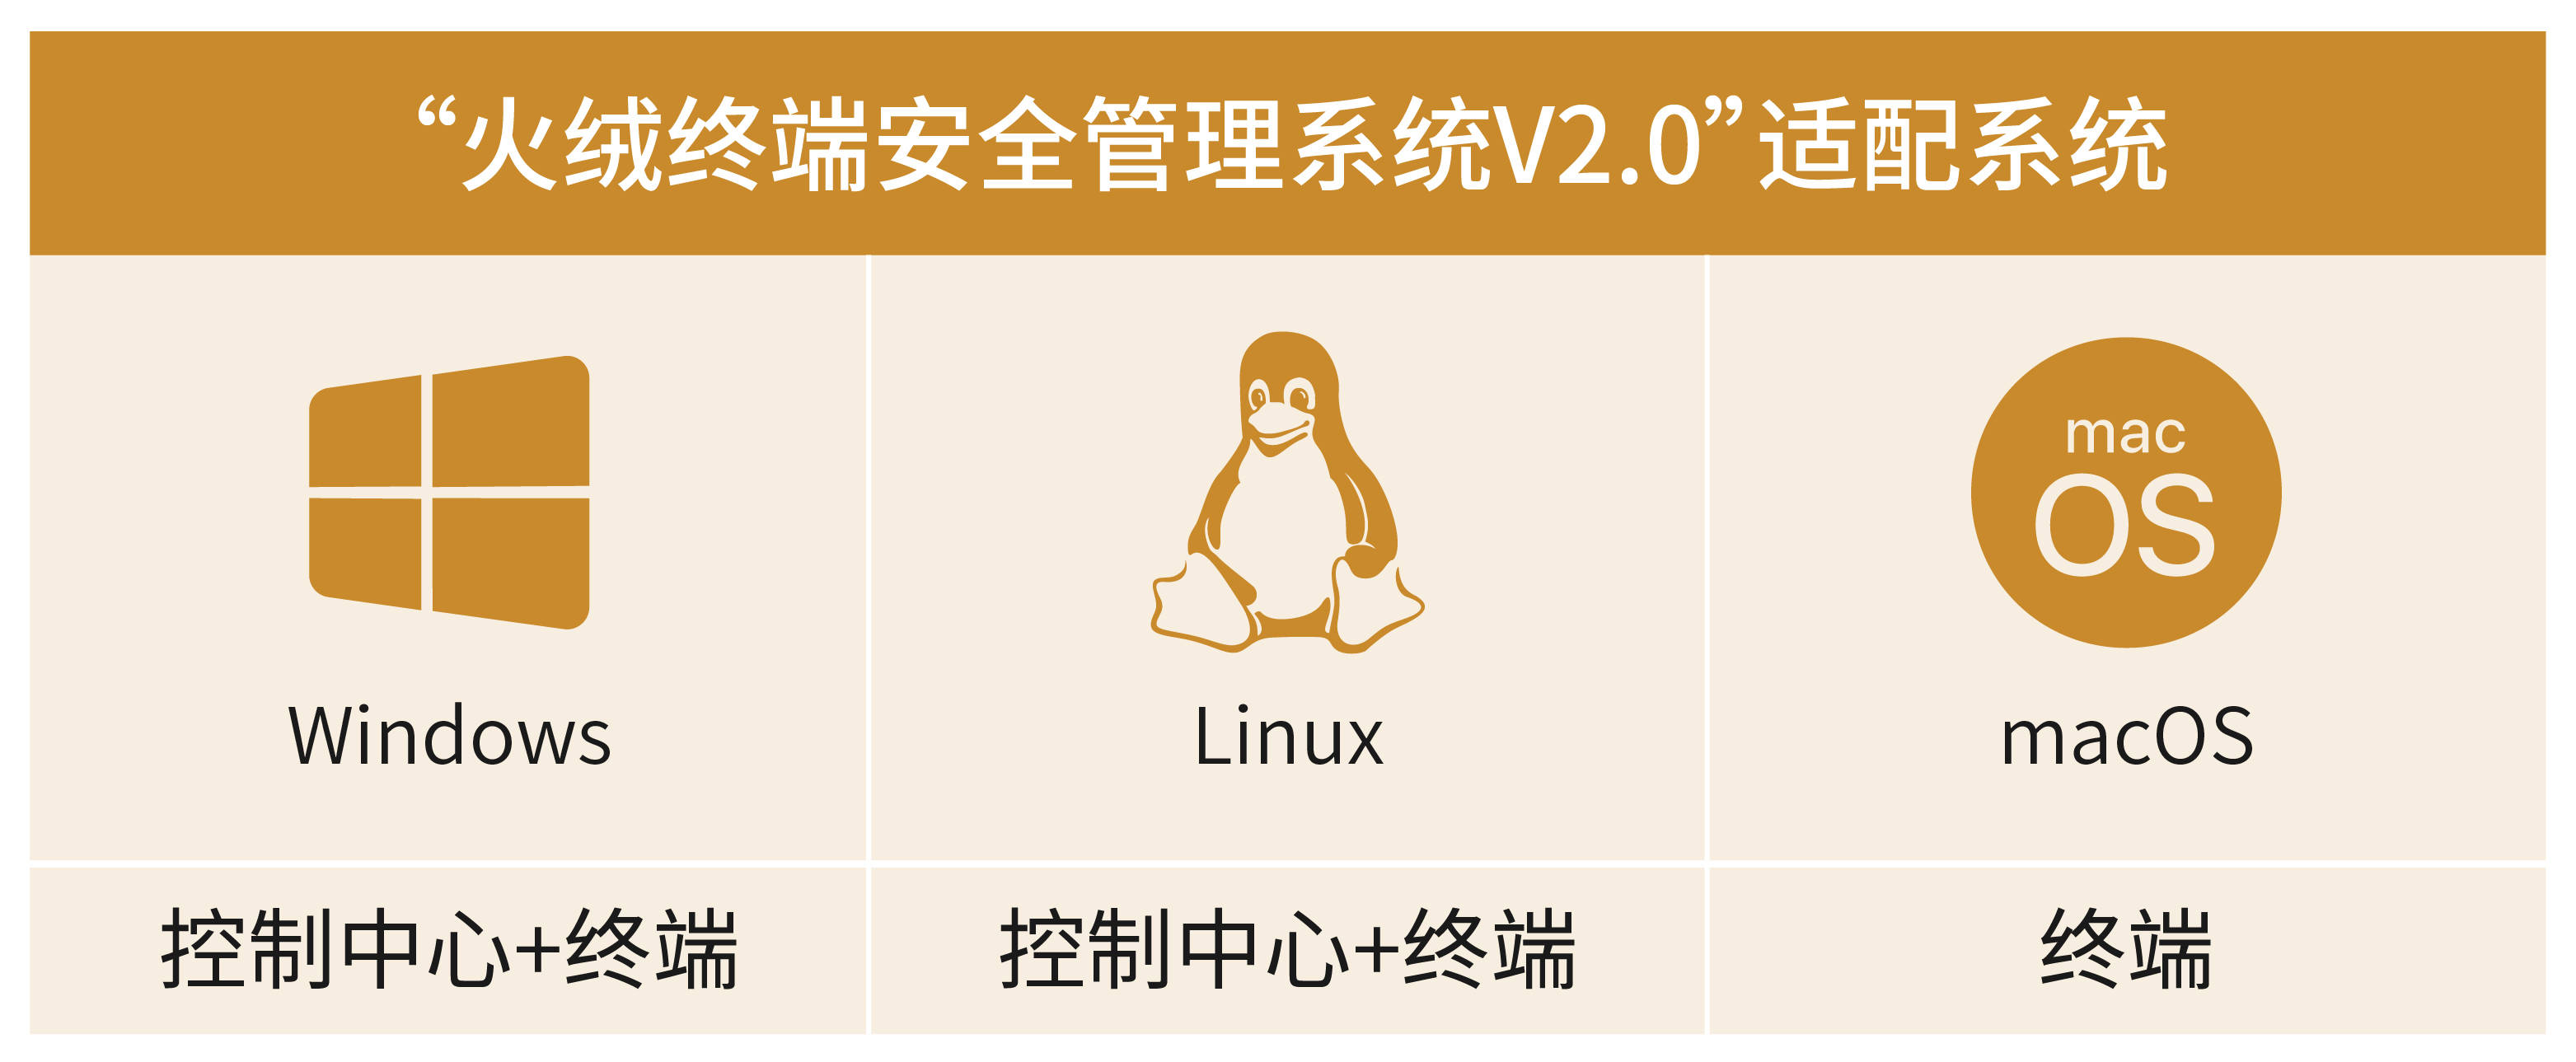 沙盒引擎盖瑞模组苹果版:火绒终端安全管理系统V2.0发布Linux控制中心